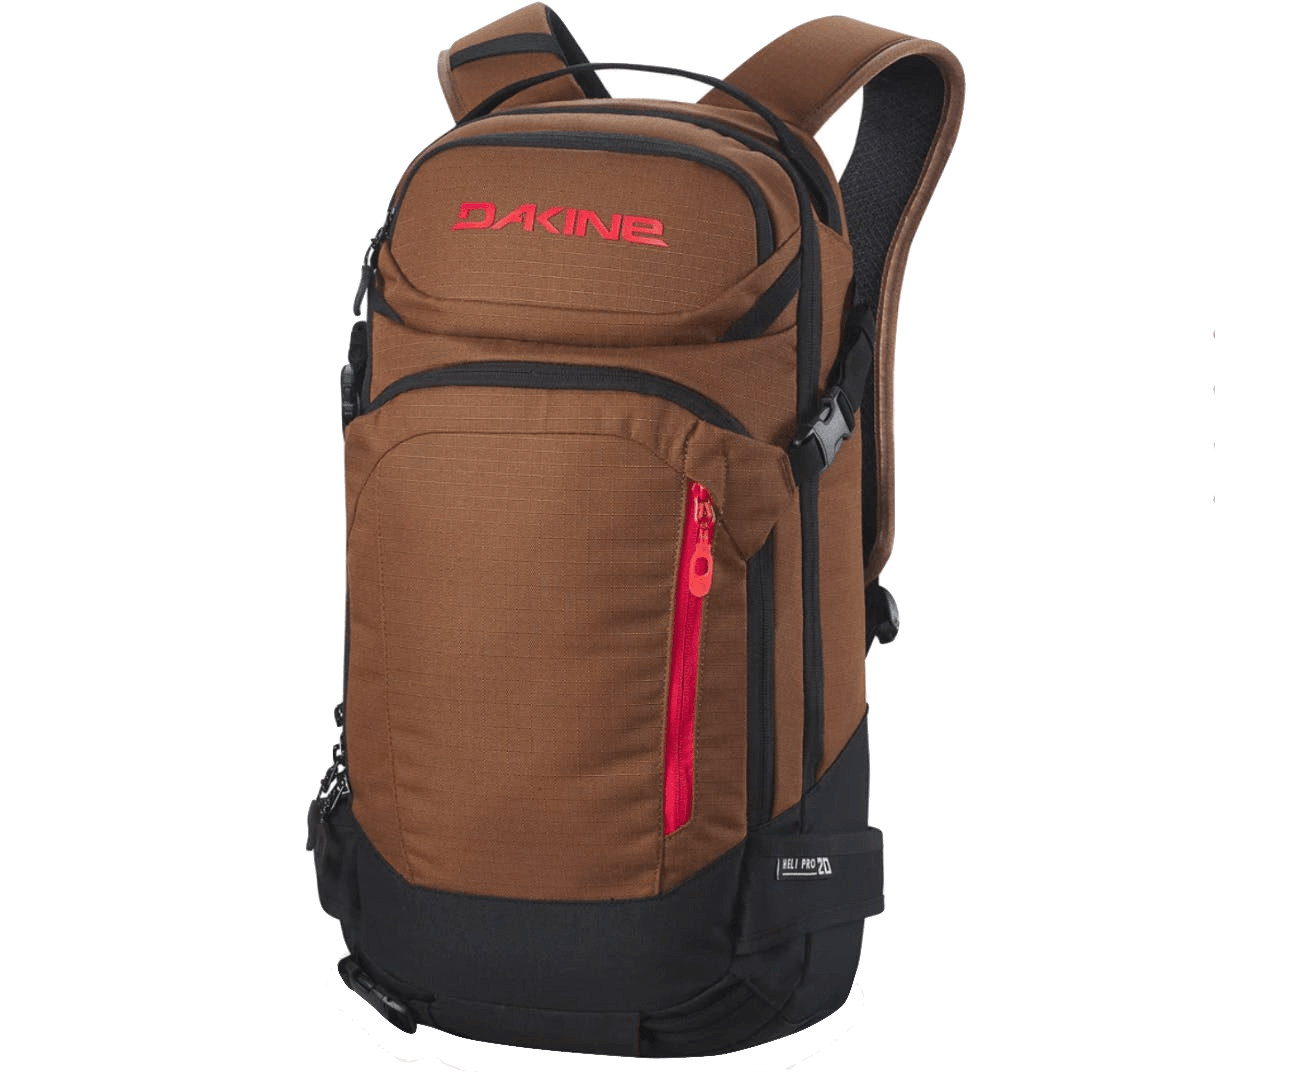 The Dakine Heli Pro Backpack.